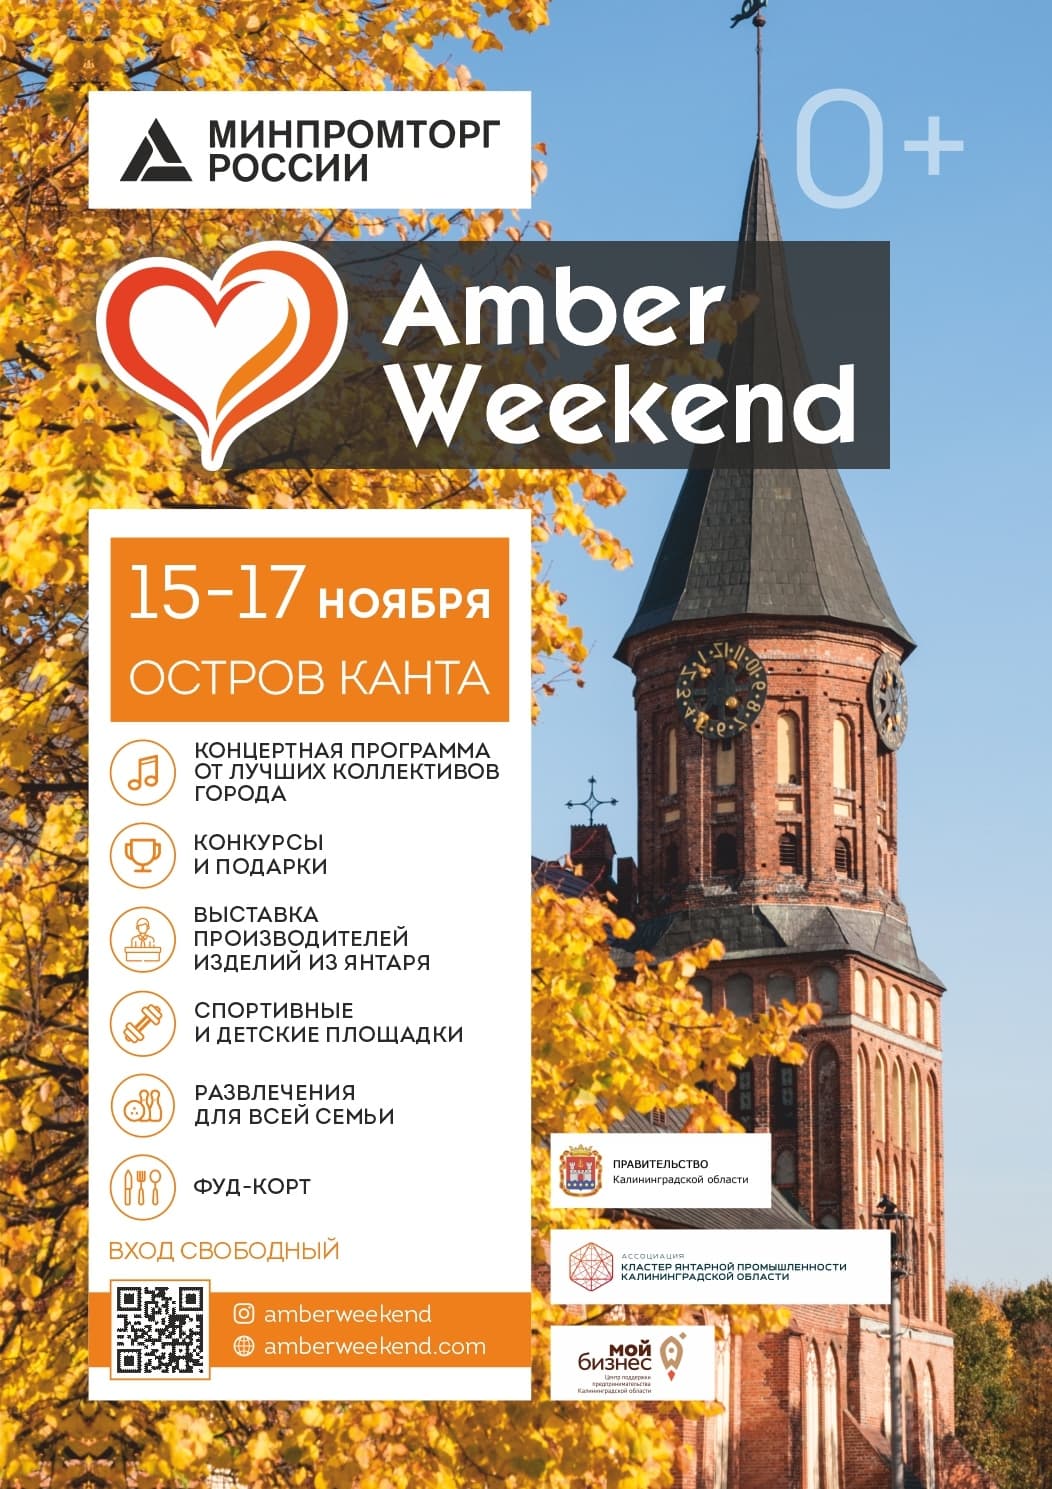 Amber Weekend 2019